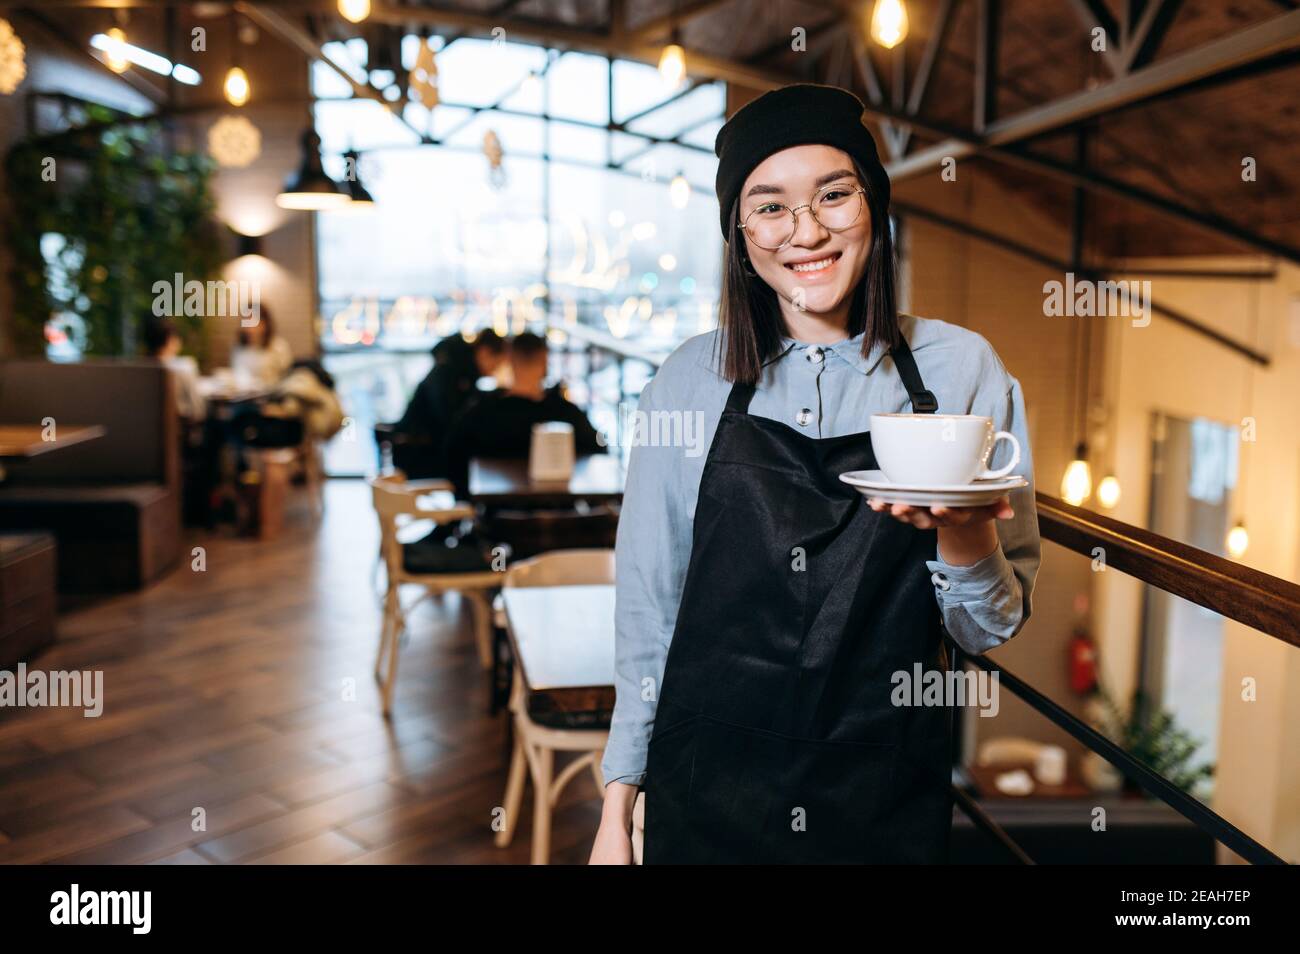 Schöne glückliche asiatische Kellnerin oder Barista mit Brille steht in einem Restaurant, Café oder Bar, hält eine Tasse aromatischen Kaffee und mit freundlichem Lächeln schaut auf die Kamera Stockfoto